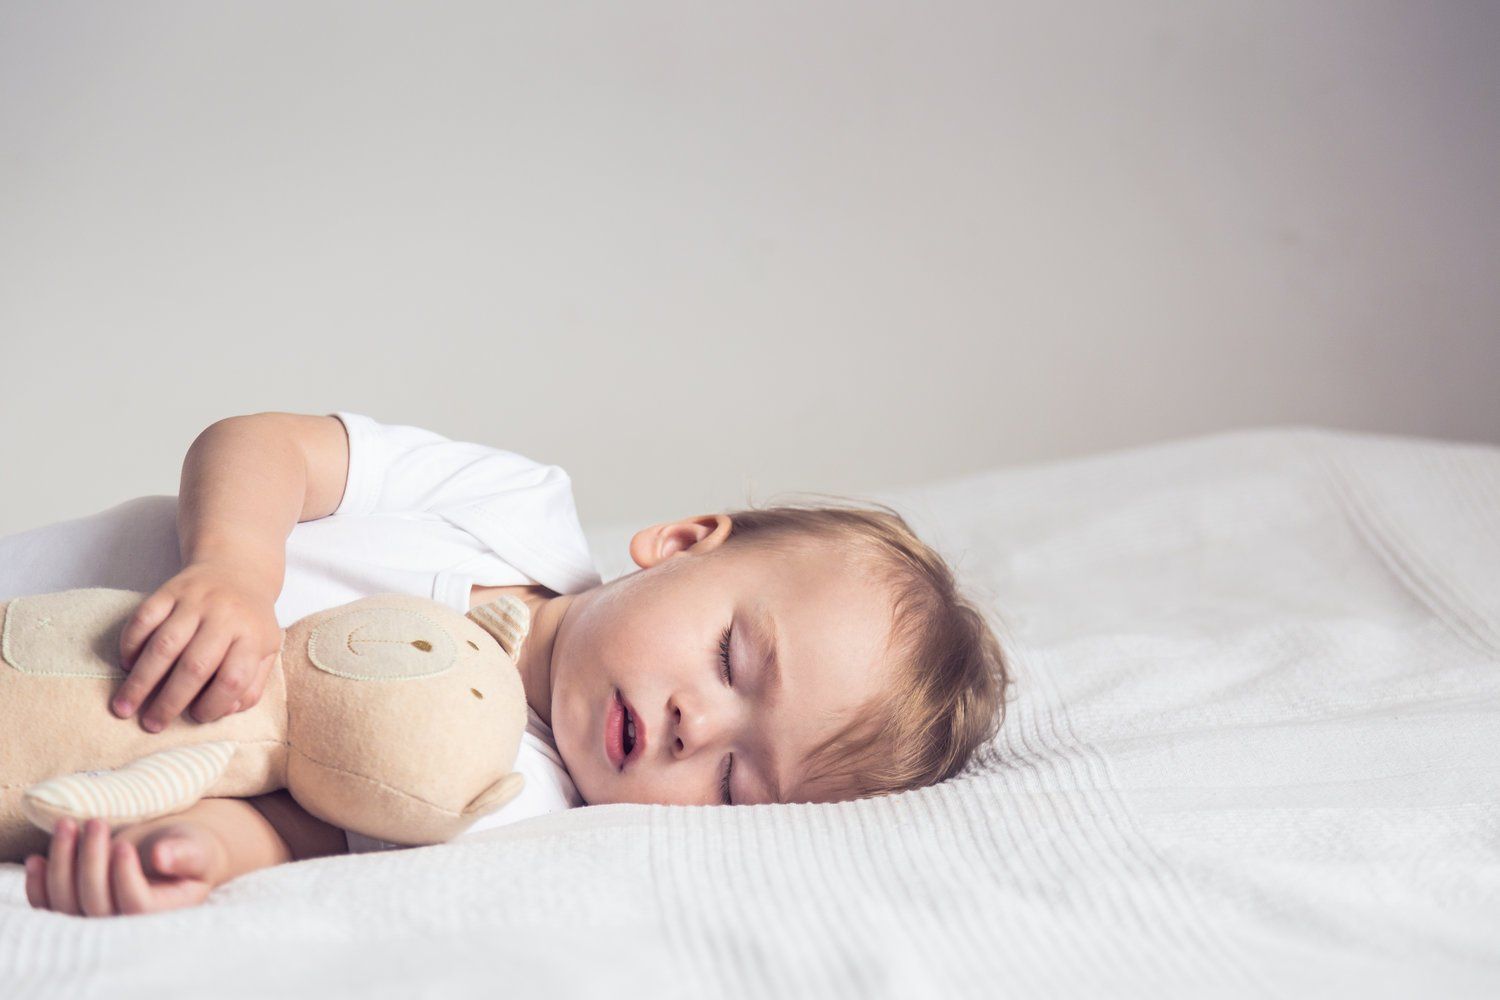 Quiropraxia melhora a qualidade do sono dos bebês